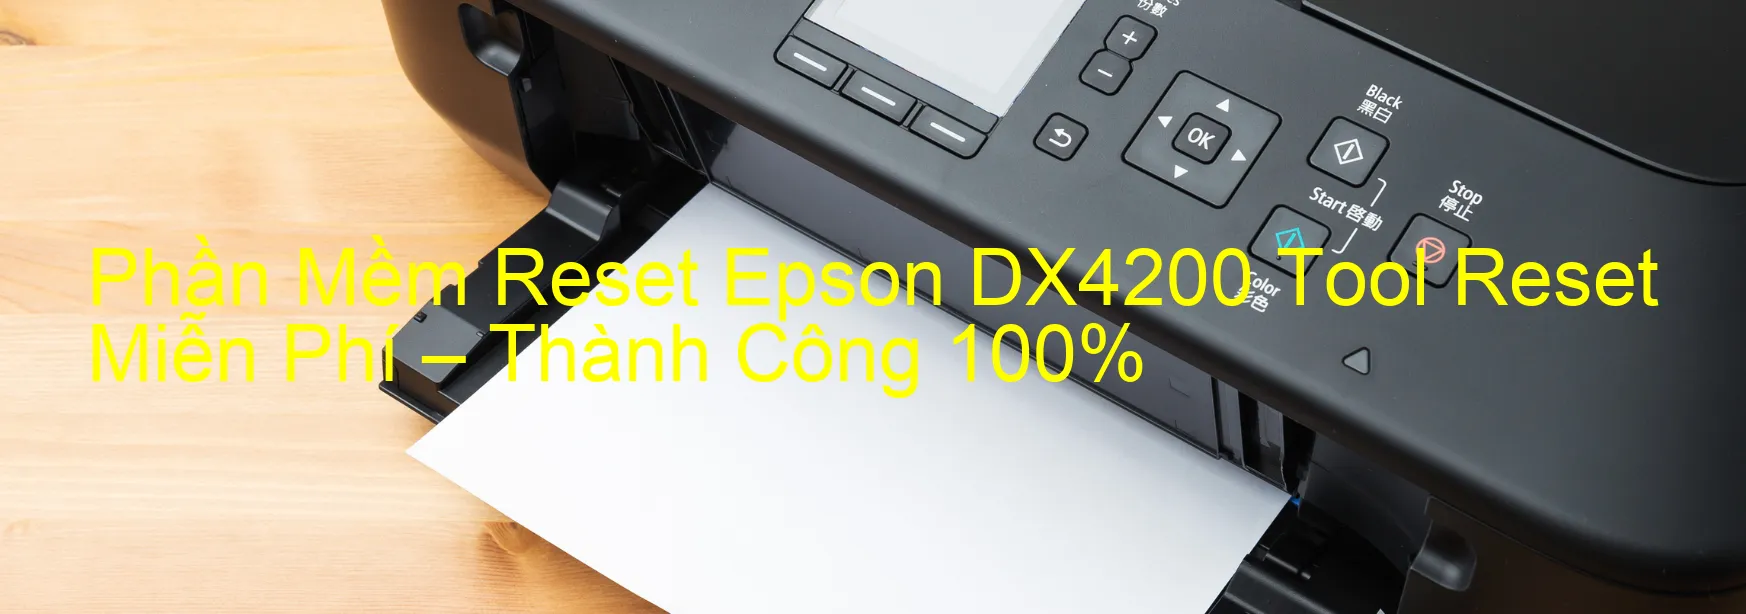 Phần Mềm Reset Epson Dx4200 Tool Reset Miễn Phí Thành Công 100 Nguyễn Đăng Miềns Blog 9900